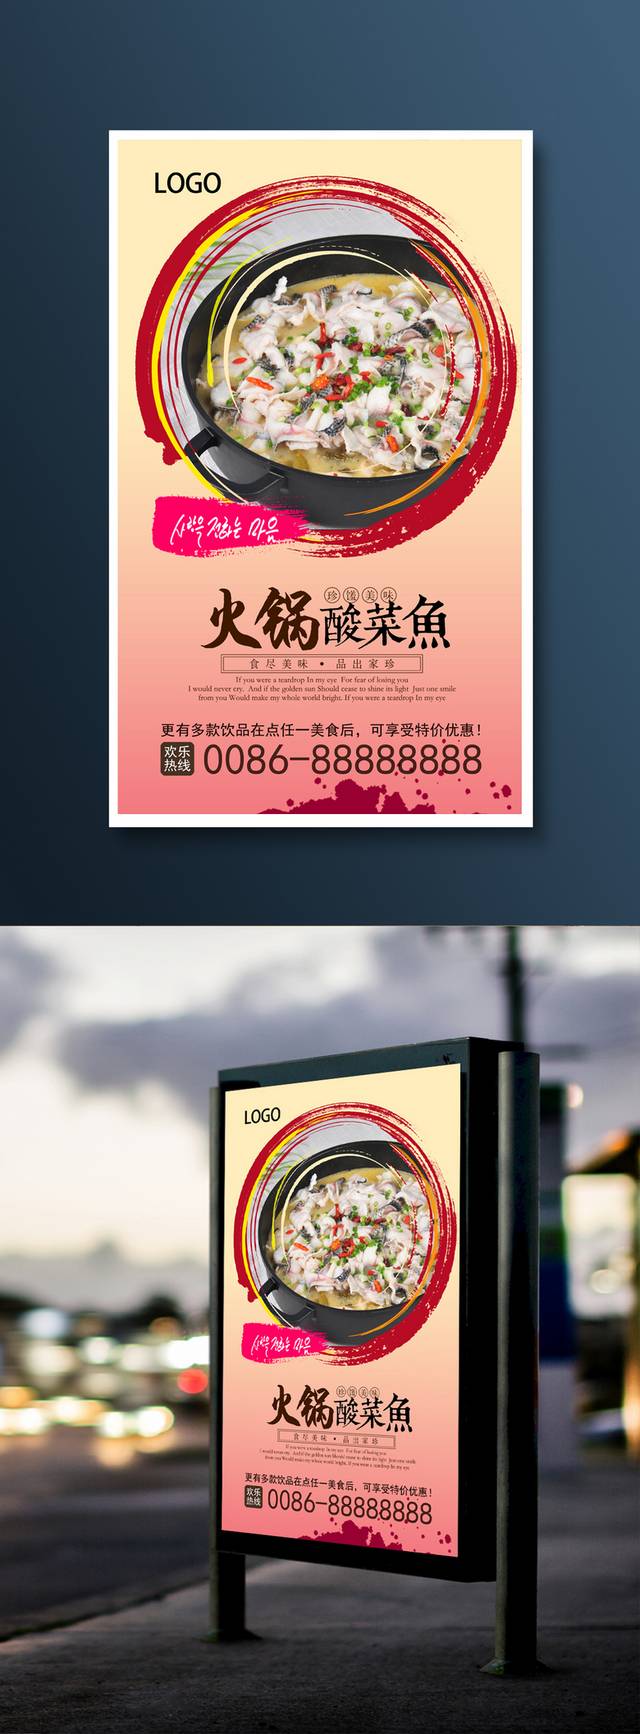 酸菜鱼火锅促销海报设计